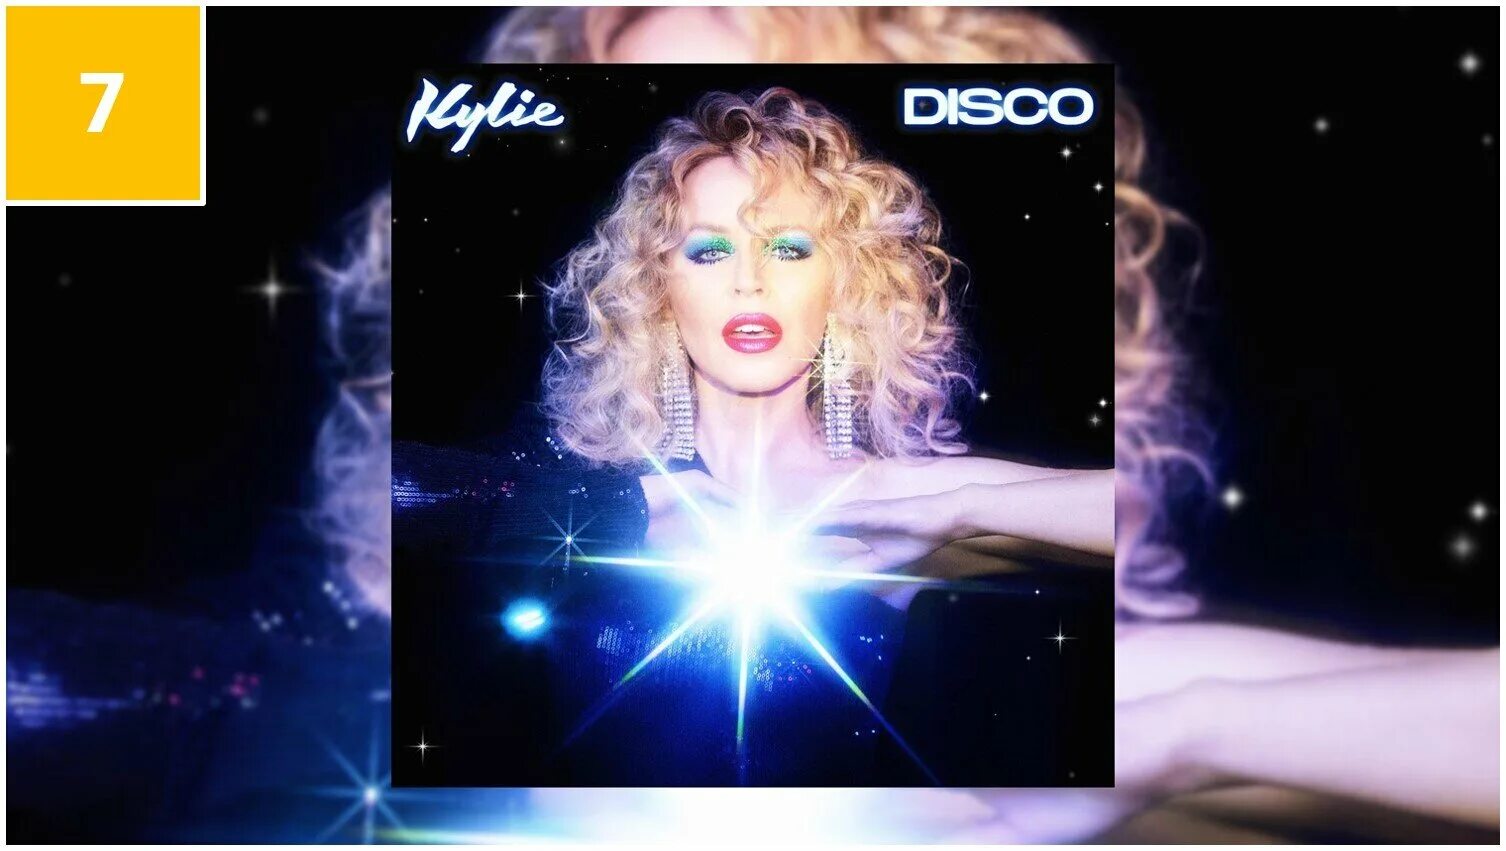 Kylie disco. Kylie Minogue Disco 2020. Minogue Kylie "Disco". Kylie Minogue Disco Vinyl.